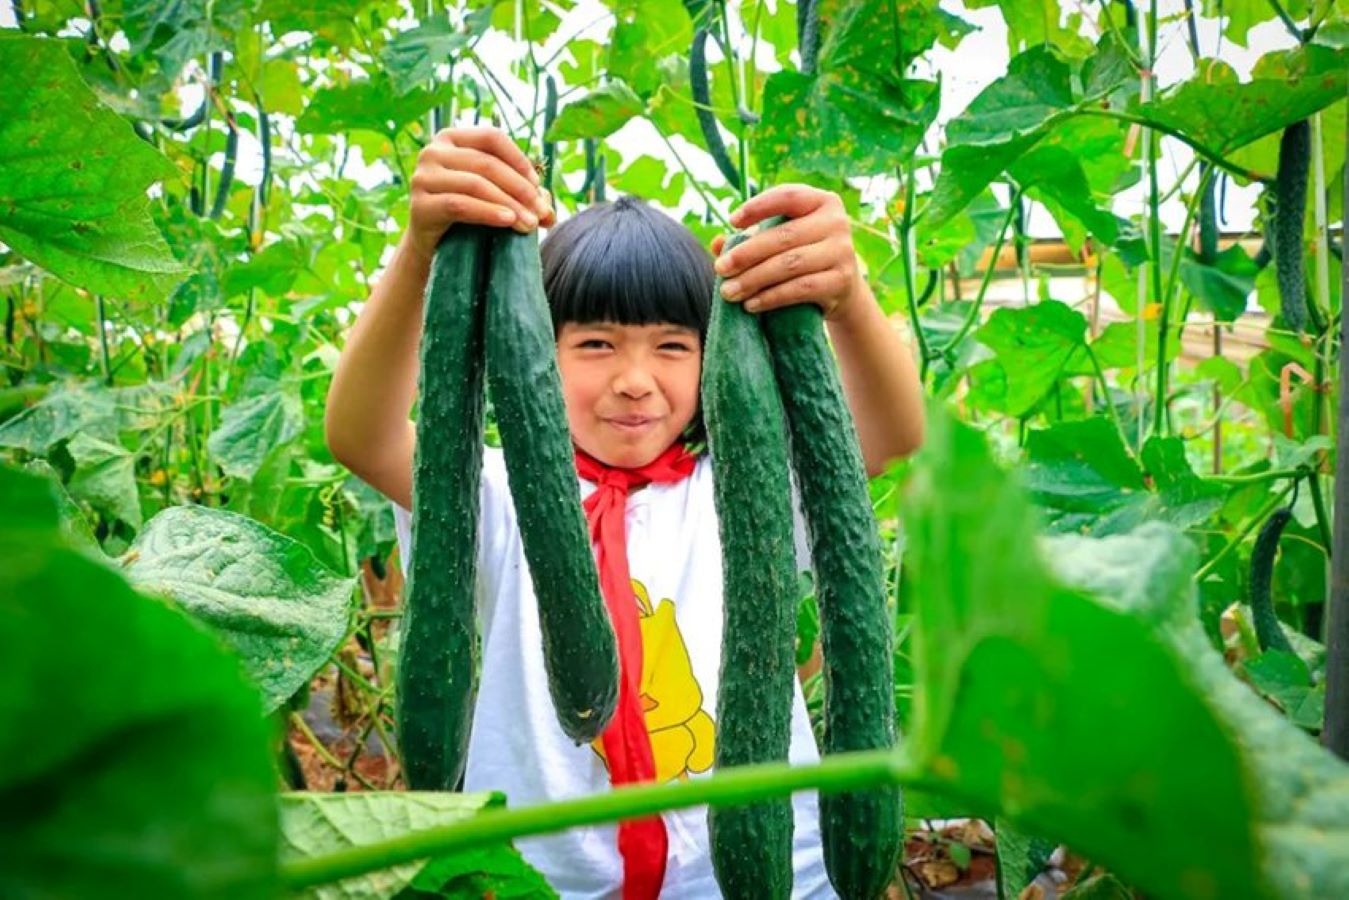 تلاميذ مدرسة ابتدائية في الصين.. يأكلون مما يُنتجون ويبيعون الفائض في السوق
